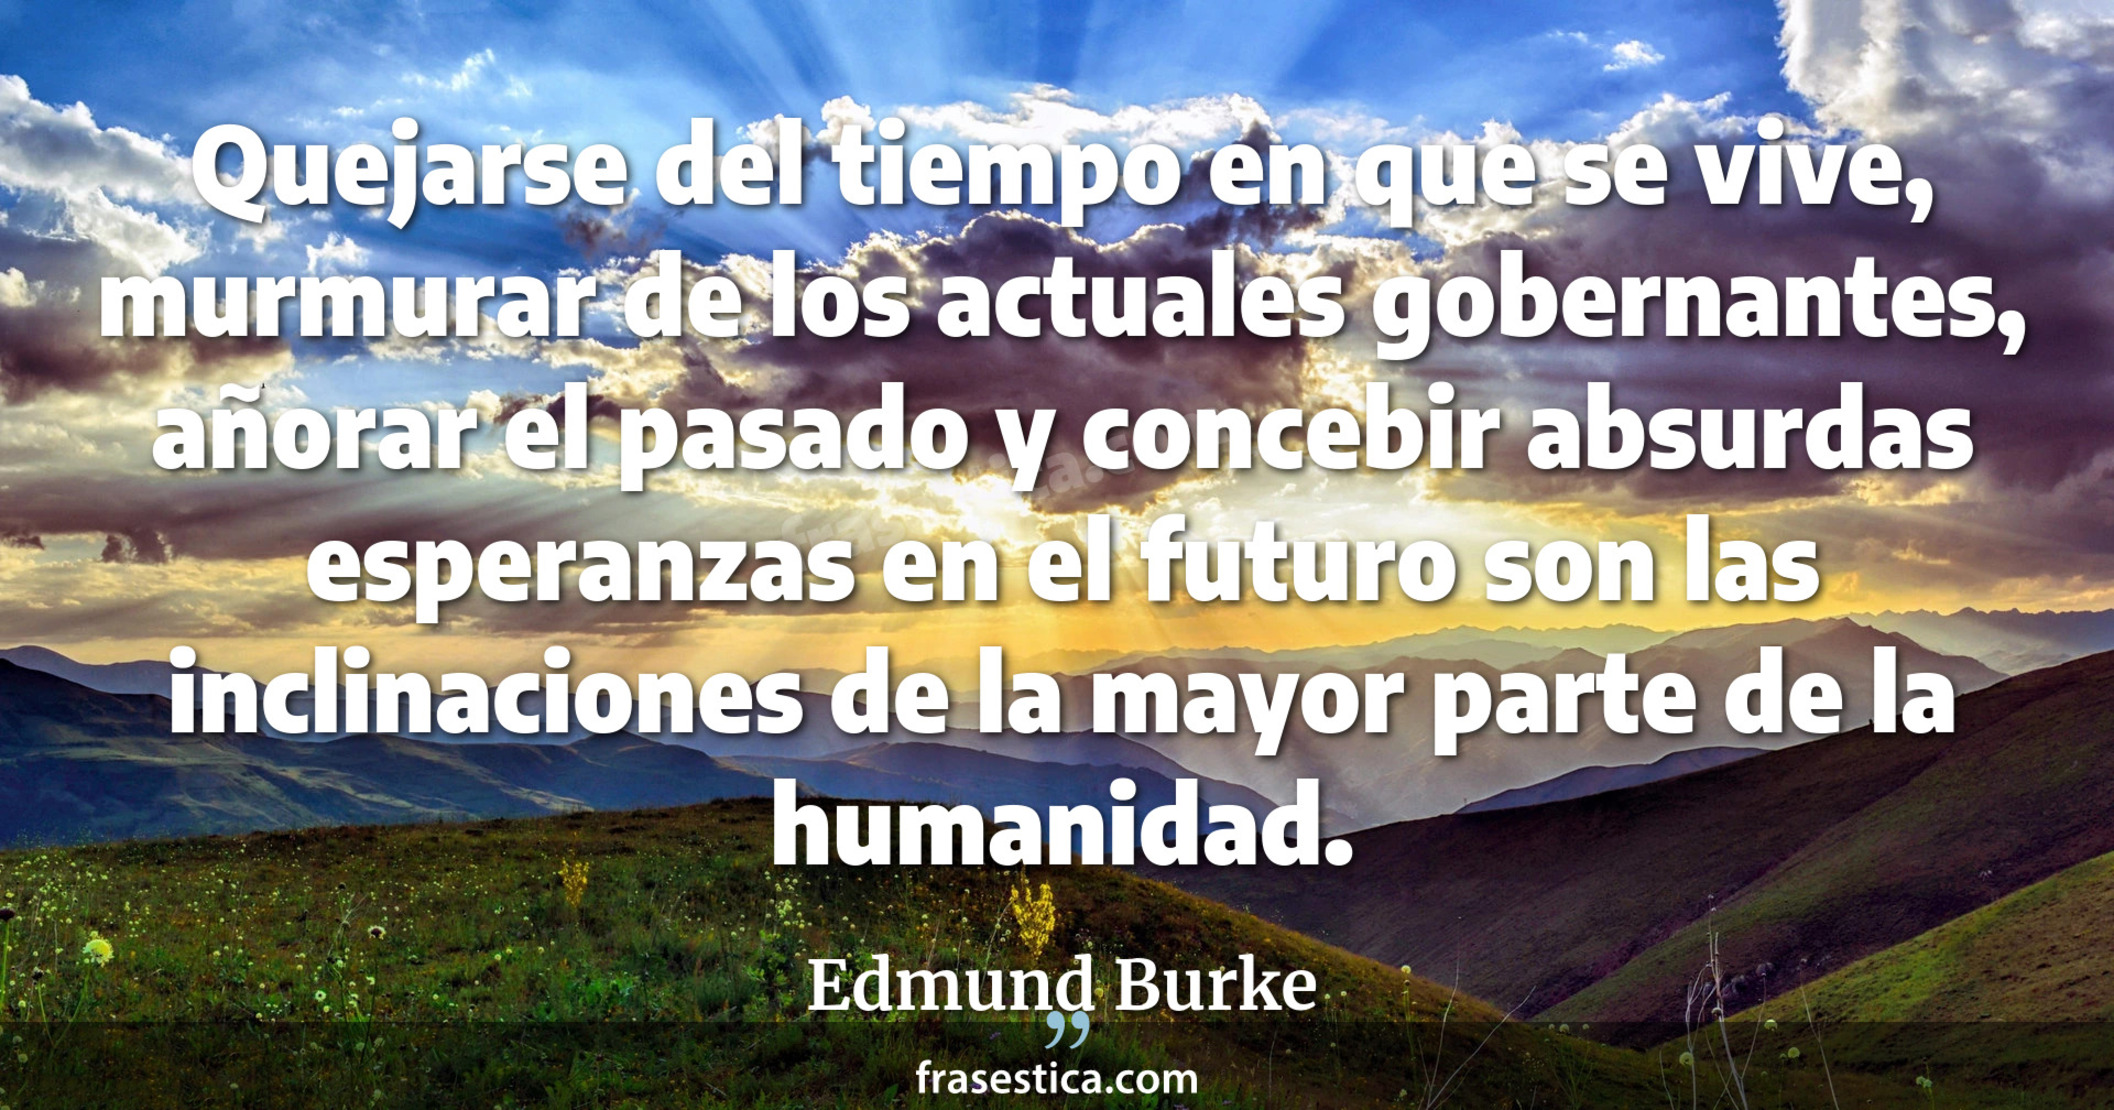 Quejarse del tiempo en que se vive, murmurar de los actuales gobernantes, añorar el pasado y concebir absurdas esperanzas en el futuro son las inclinaciones de la mayor parte de la humanidad. - Edmund Burke